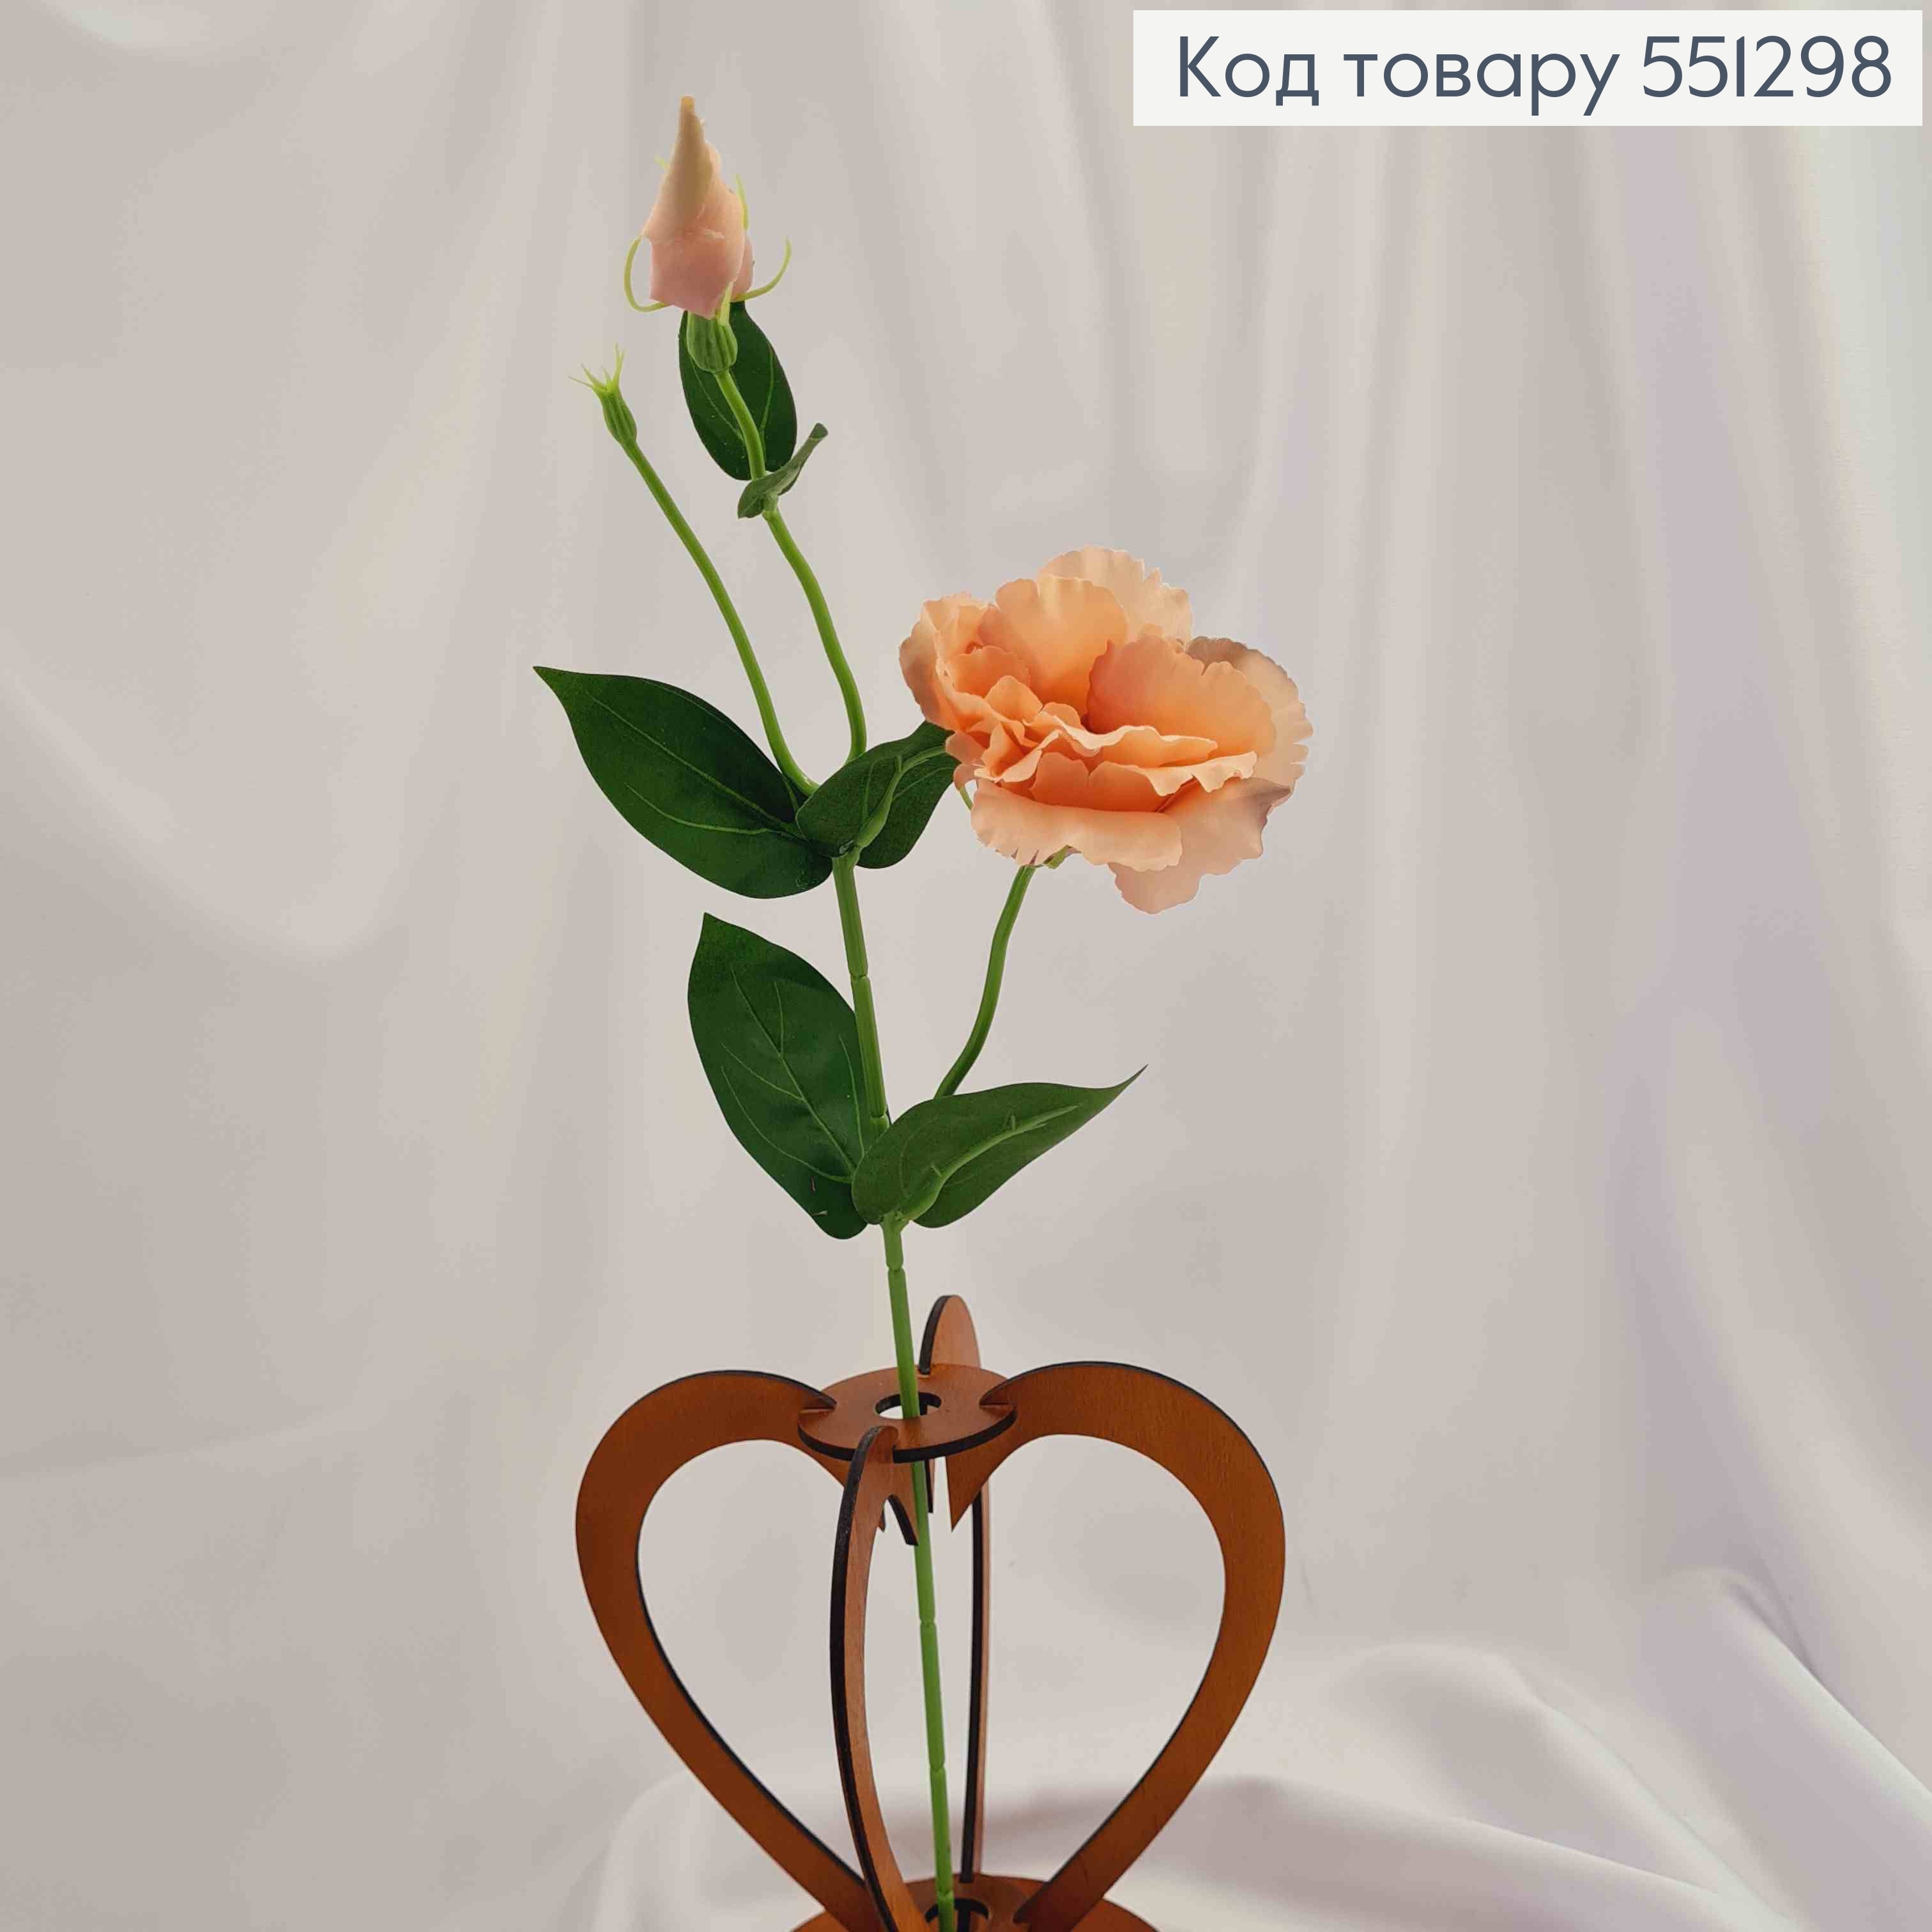 Искусственные цветы, веточка Эустомы, ПУДРОВОГО цвета, 1 цветок + 1 бутон, на металлическом стержне, 47см 551298 фото 2